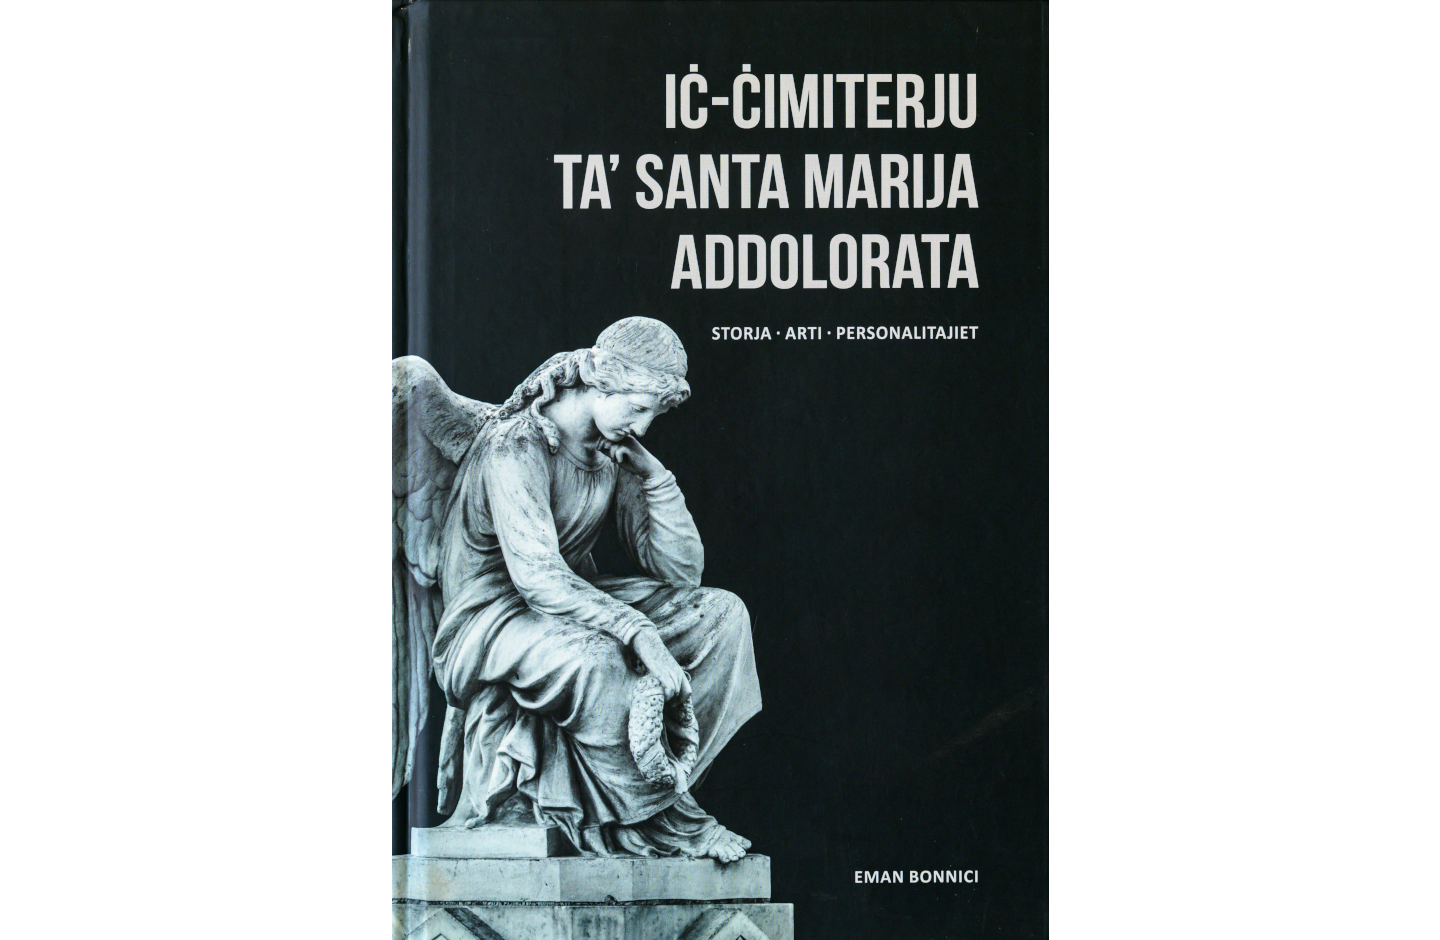 Ic-Cimiterju ta’ Santa Marija Addolorata : Storja, Arti, Personalitajiet